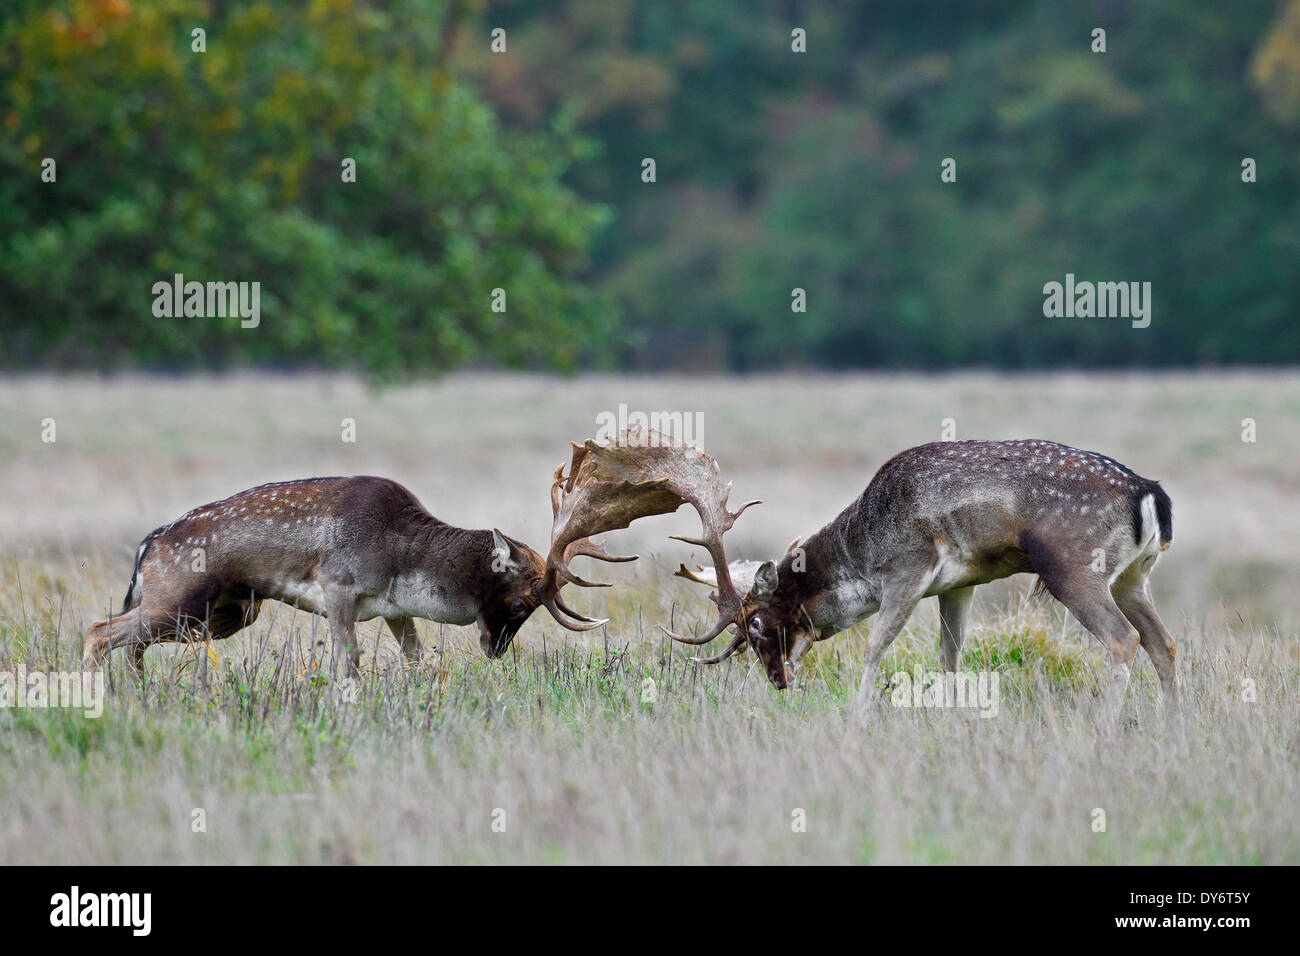 Two Fallow deer (Dama dama) bucks fighting in grassland during the rutting season in autumn Stock Photo